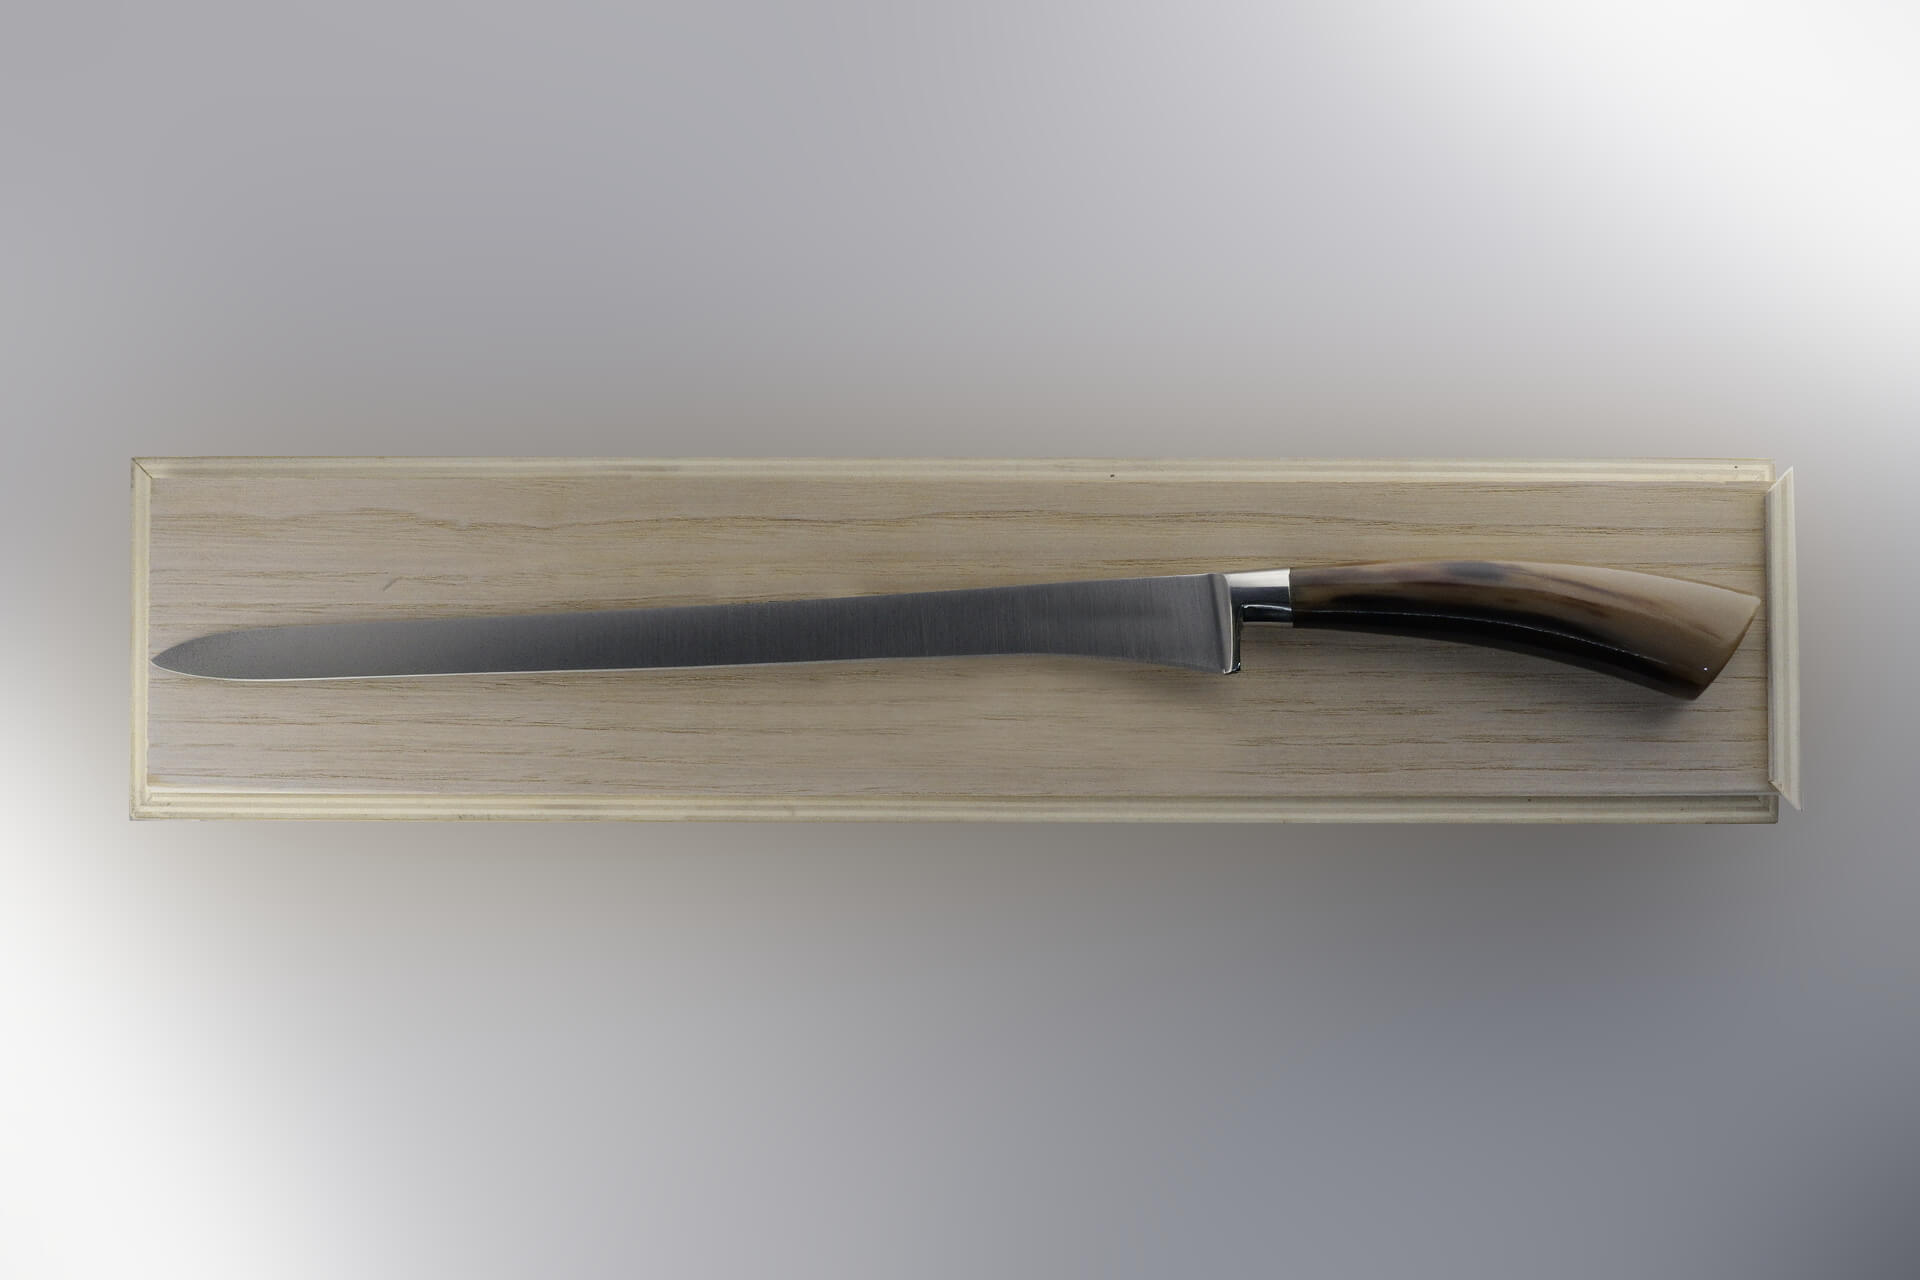 Coltello in acciaio forgiato fatto a mano in Italia, questo coltello da  prosciutto ha la lama lunga, stretta e flessibile per re